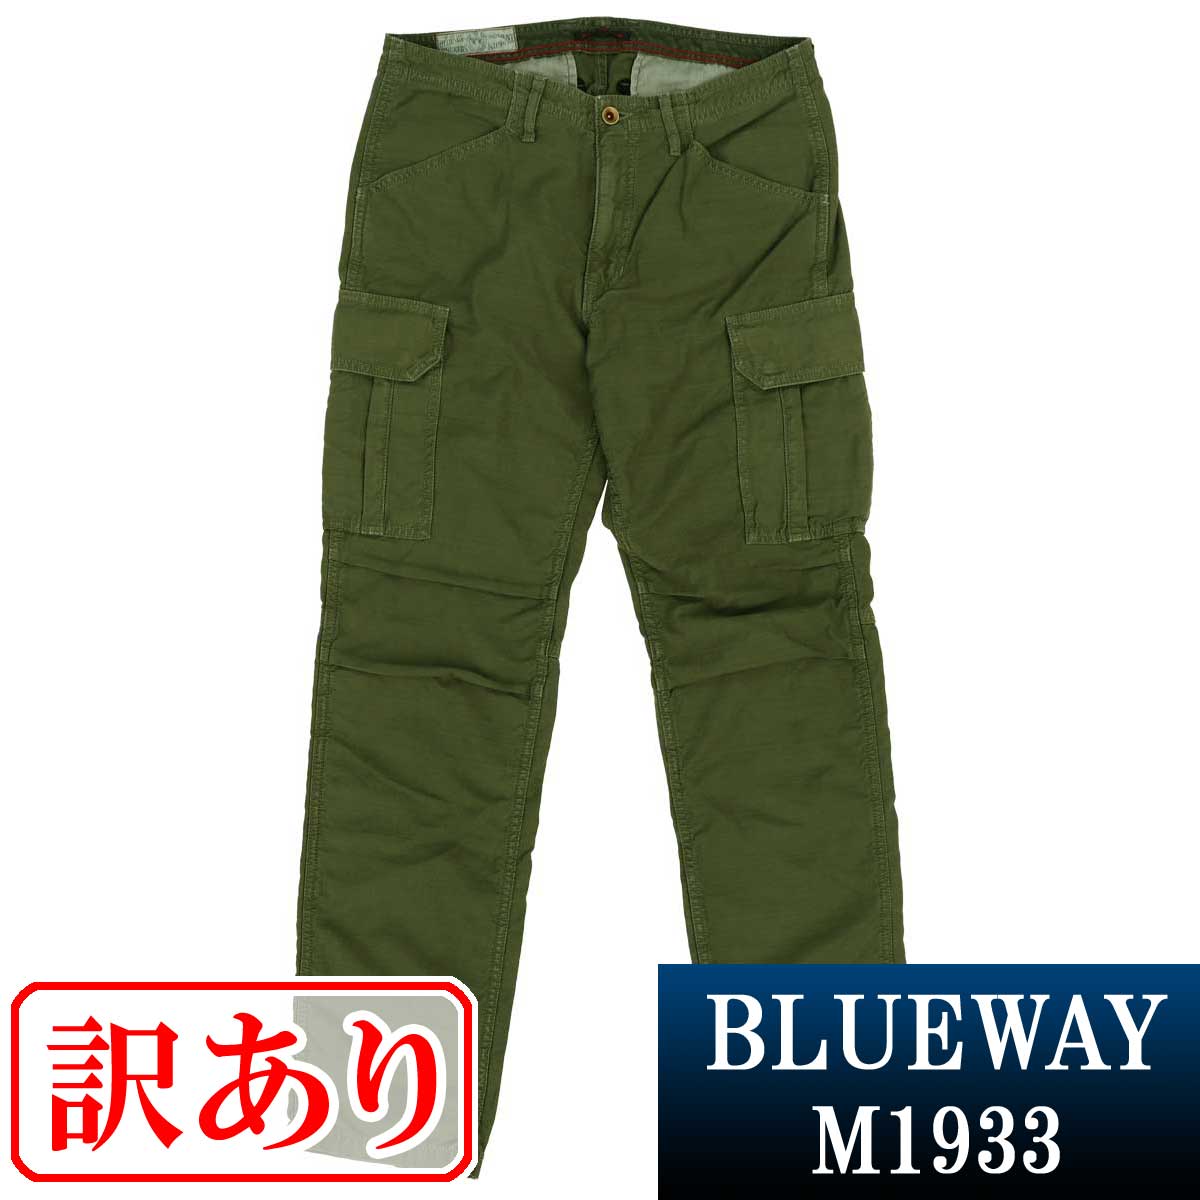 訳あり品:BLUEWAY:バックサテン テーパード カーゴパンツ（アーミーグリーン）:M1933-1959 S-LL ブルーウェイ メンズ 裾上げ 日本製 B153